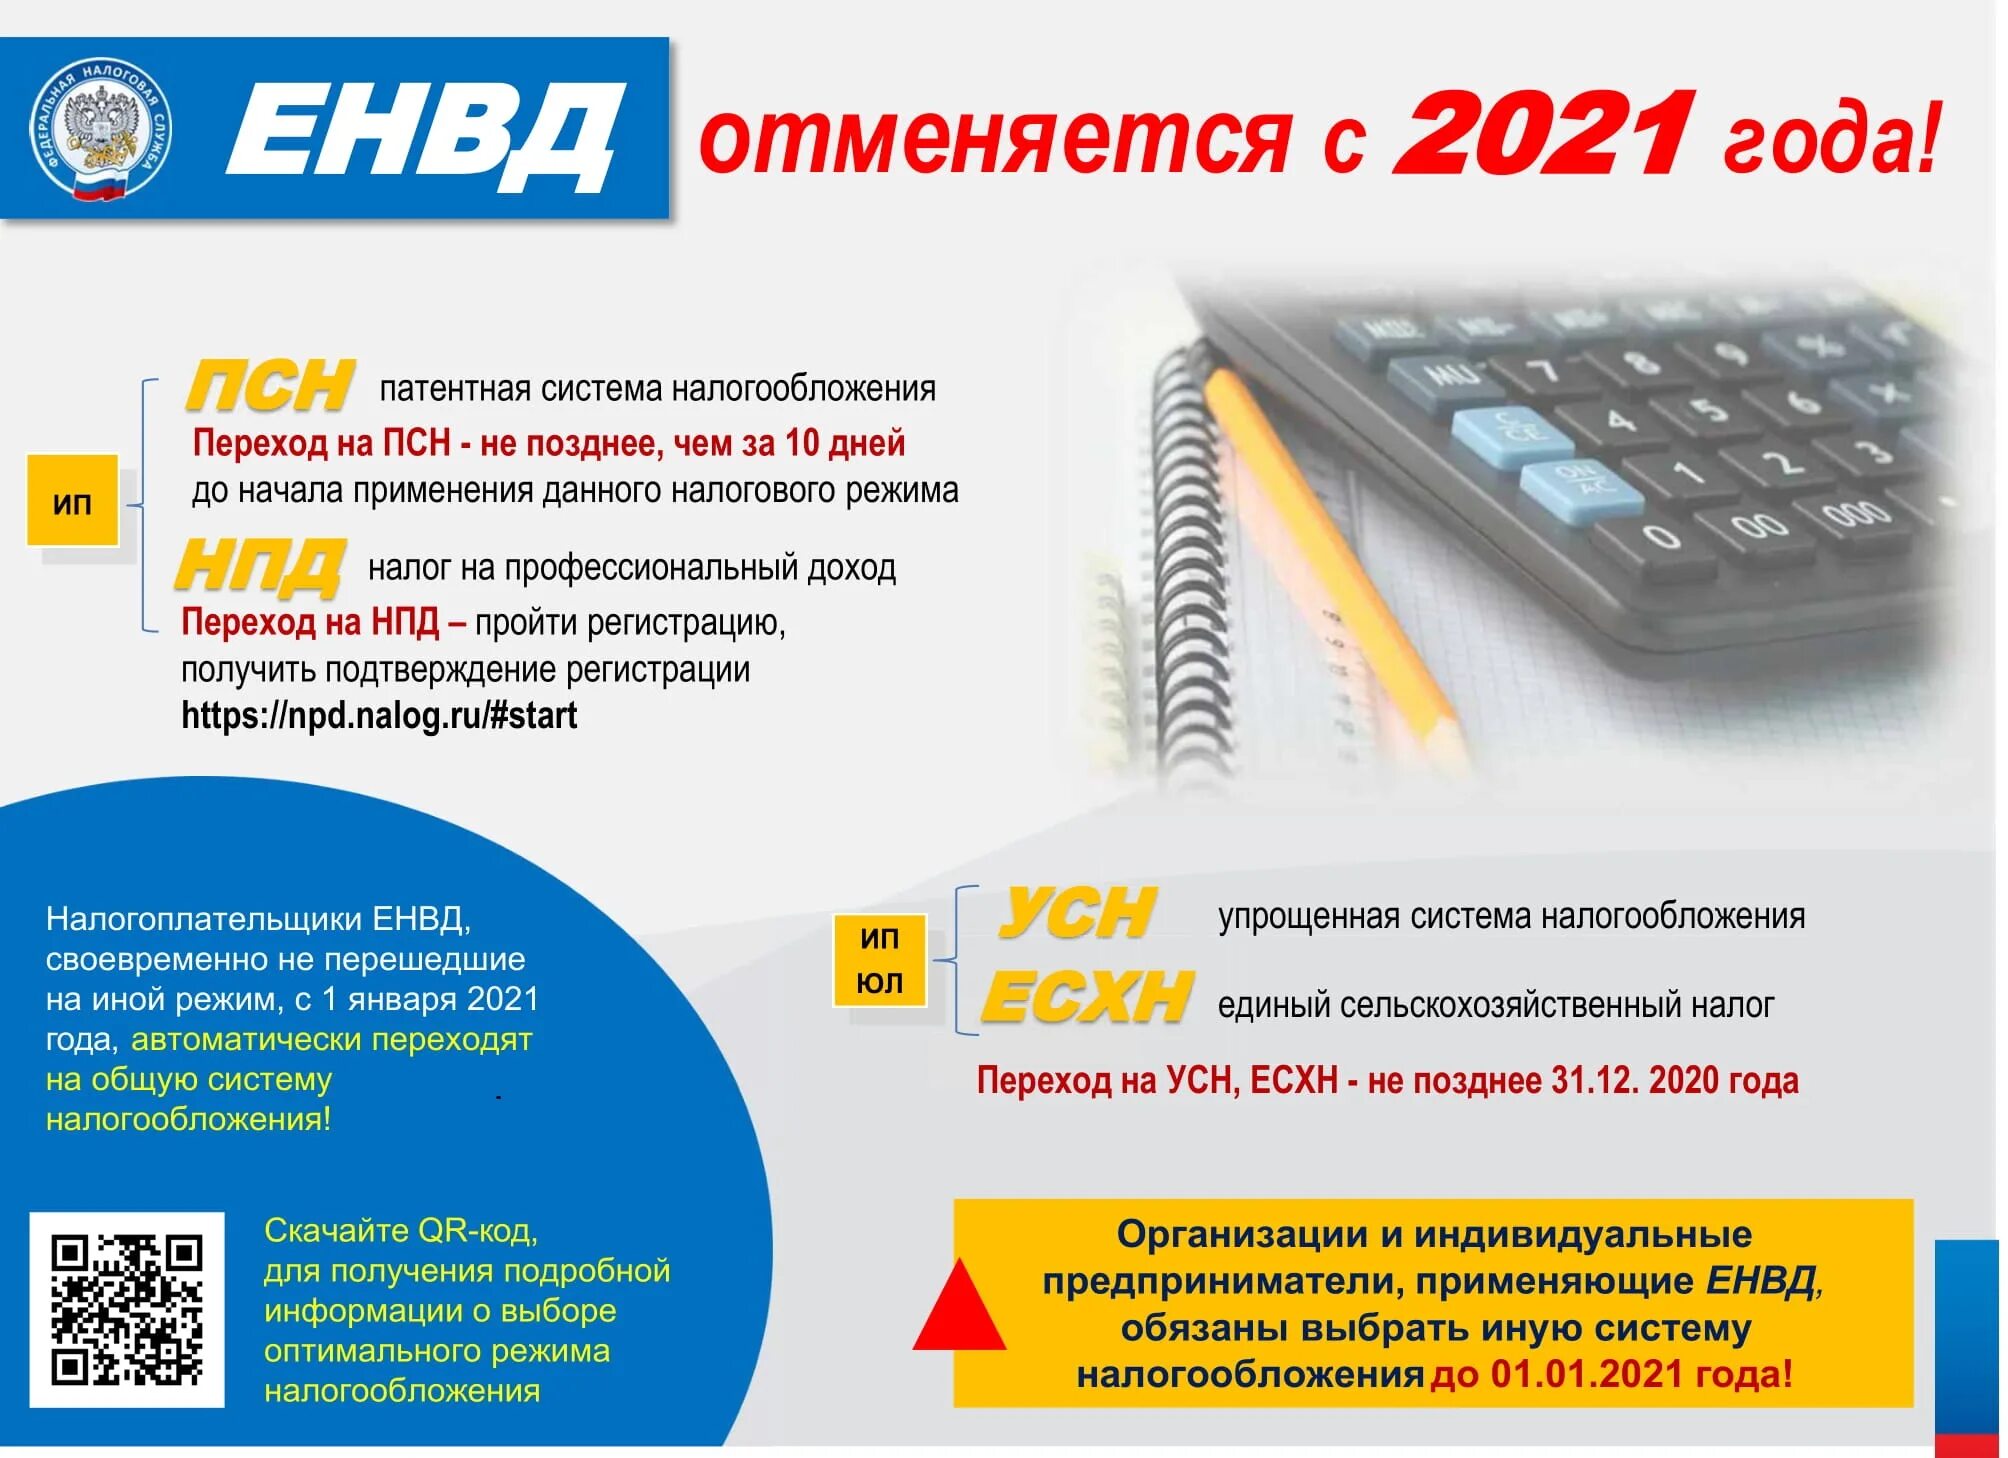 Изменения налогов 2021. Системы налогообложения 2021. Системы налогообложения для ИП В 2021. Патентная система налогообложения в 2021 году для ИП. Налоговые режимы для ИП С 2021.